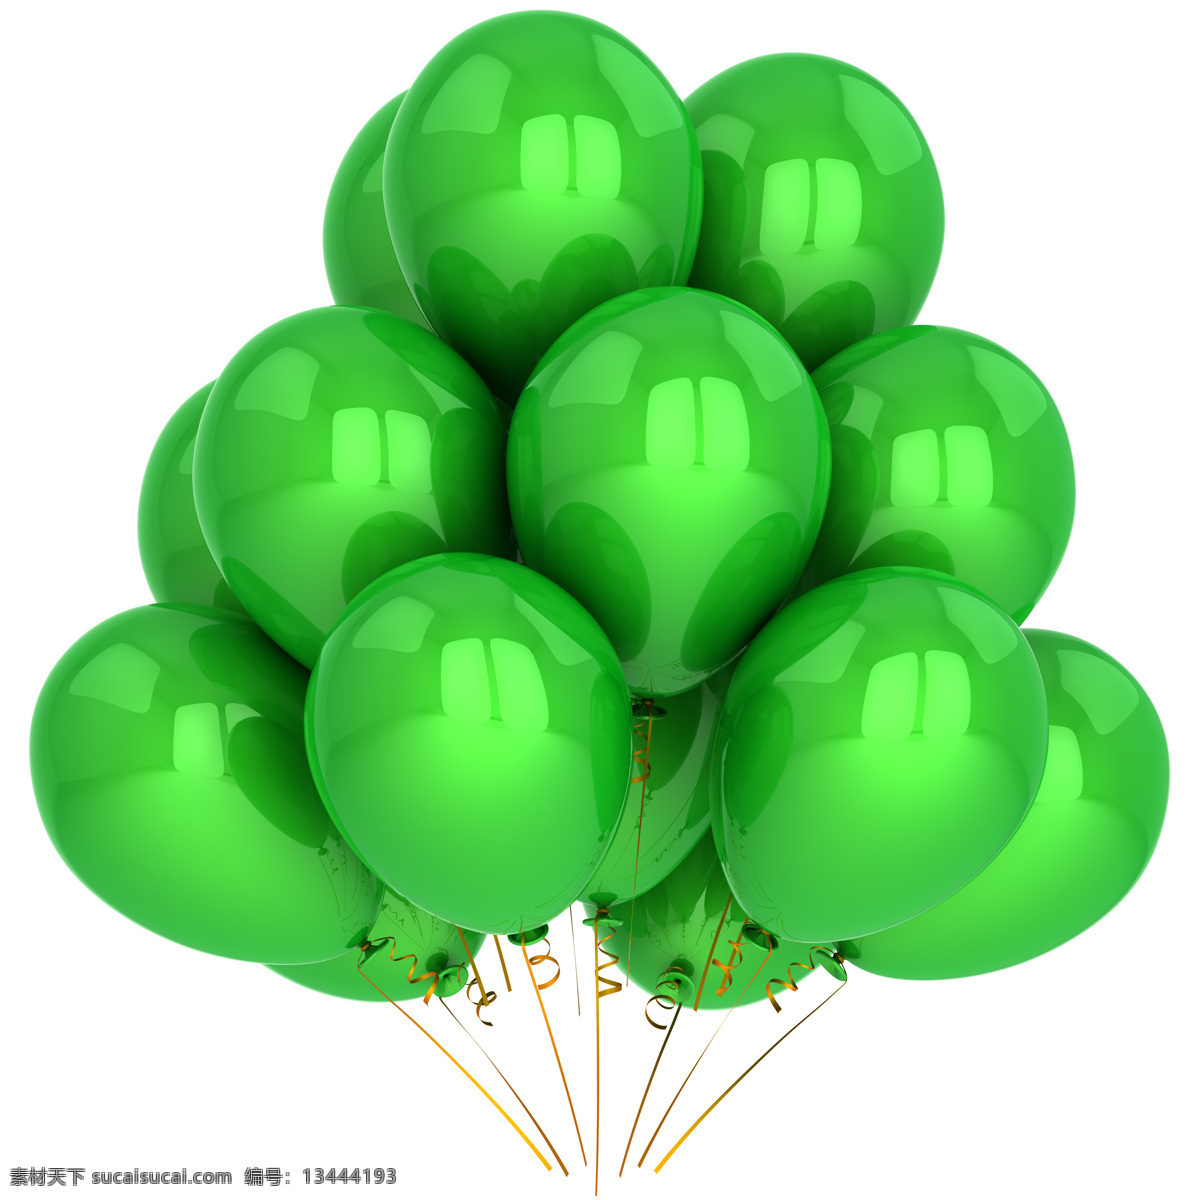 堆 绿色 气球 绿色气球 节日气球 色彩气球 气球图片 氢气球 其他类别 生活百科